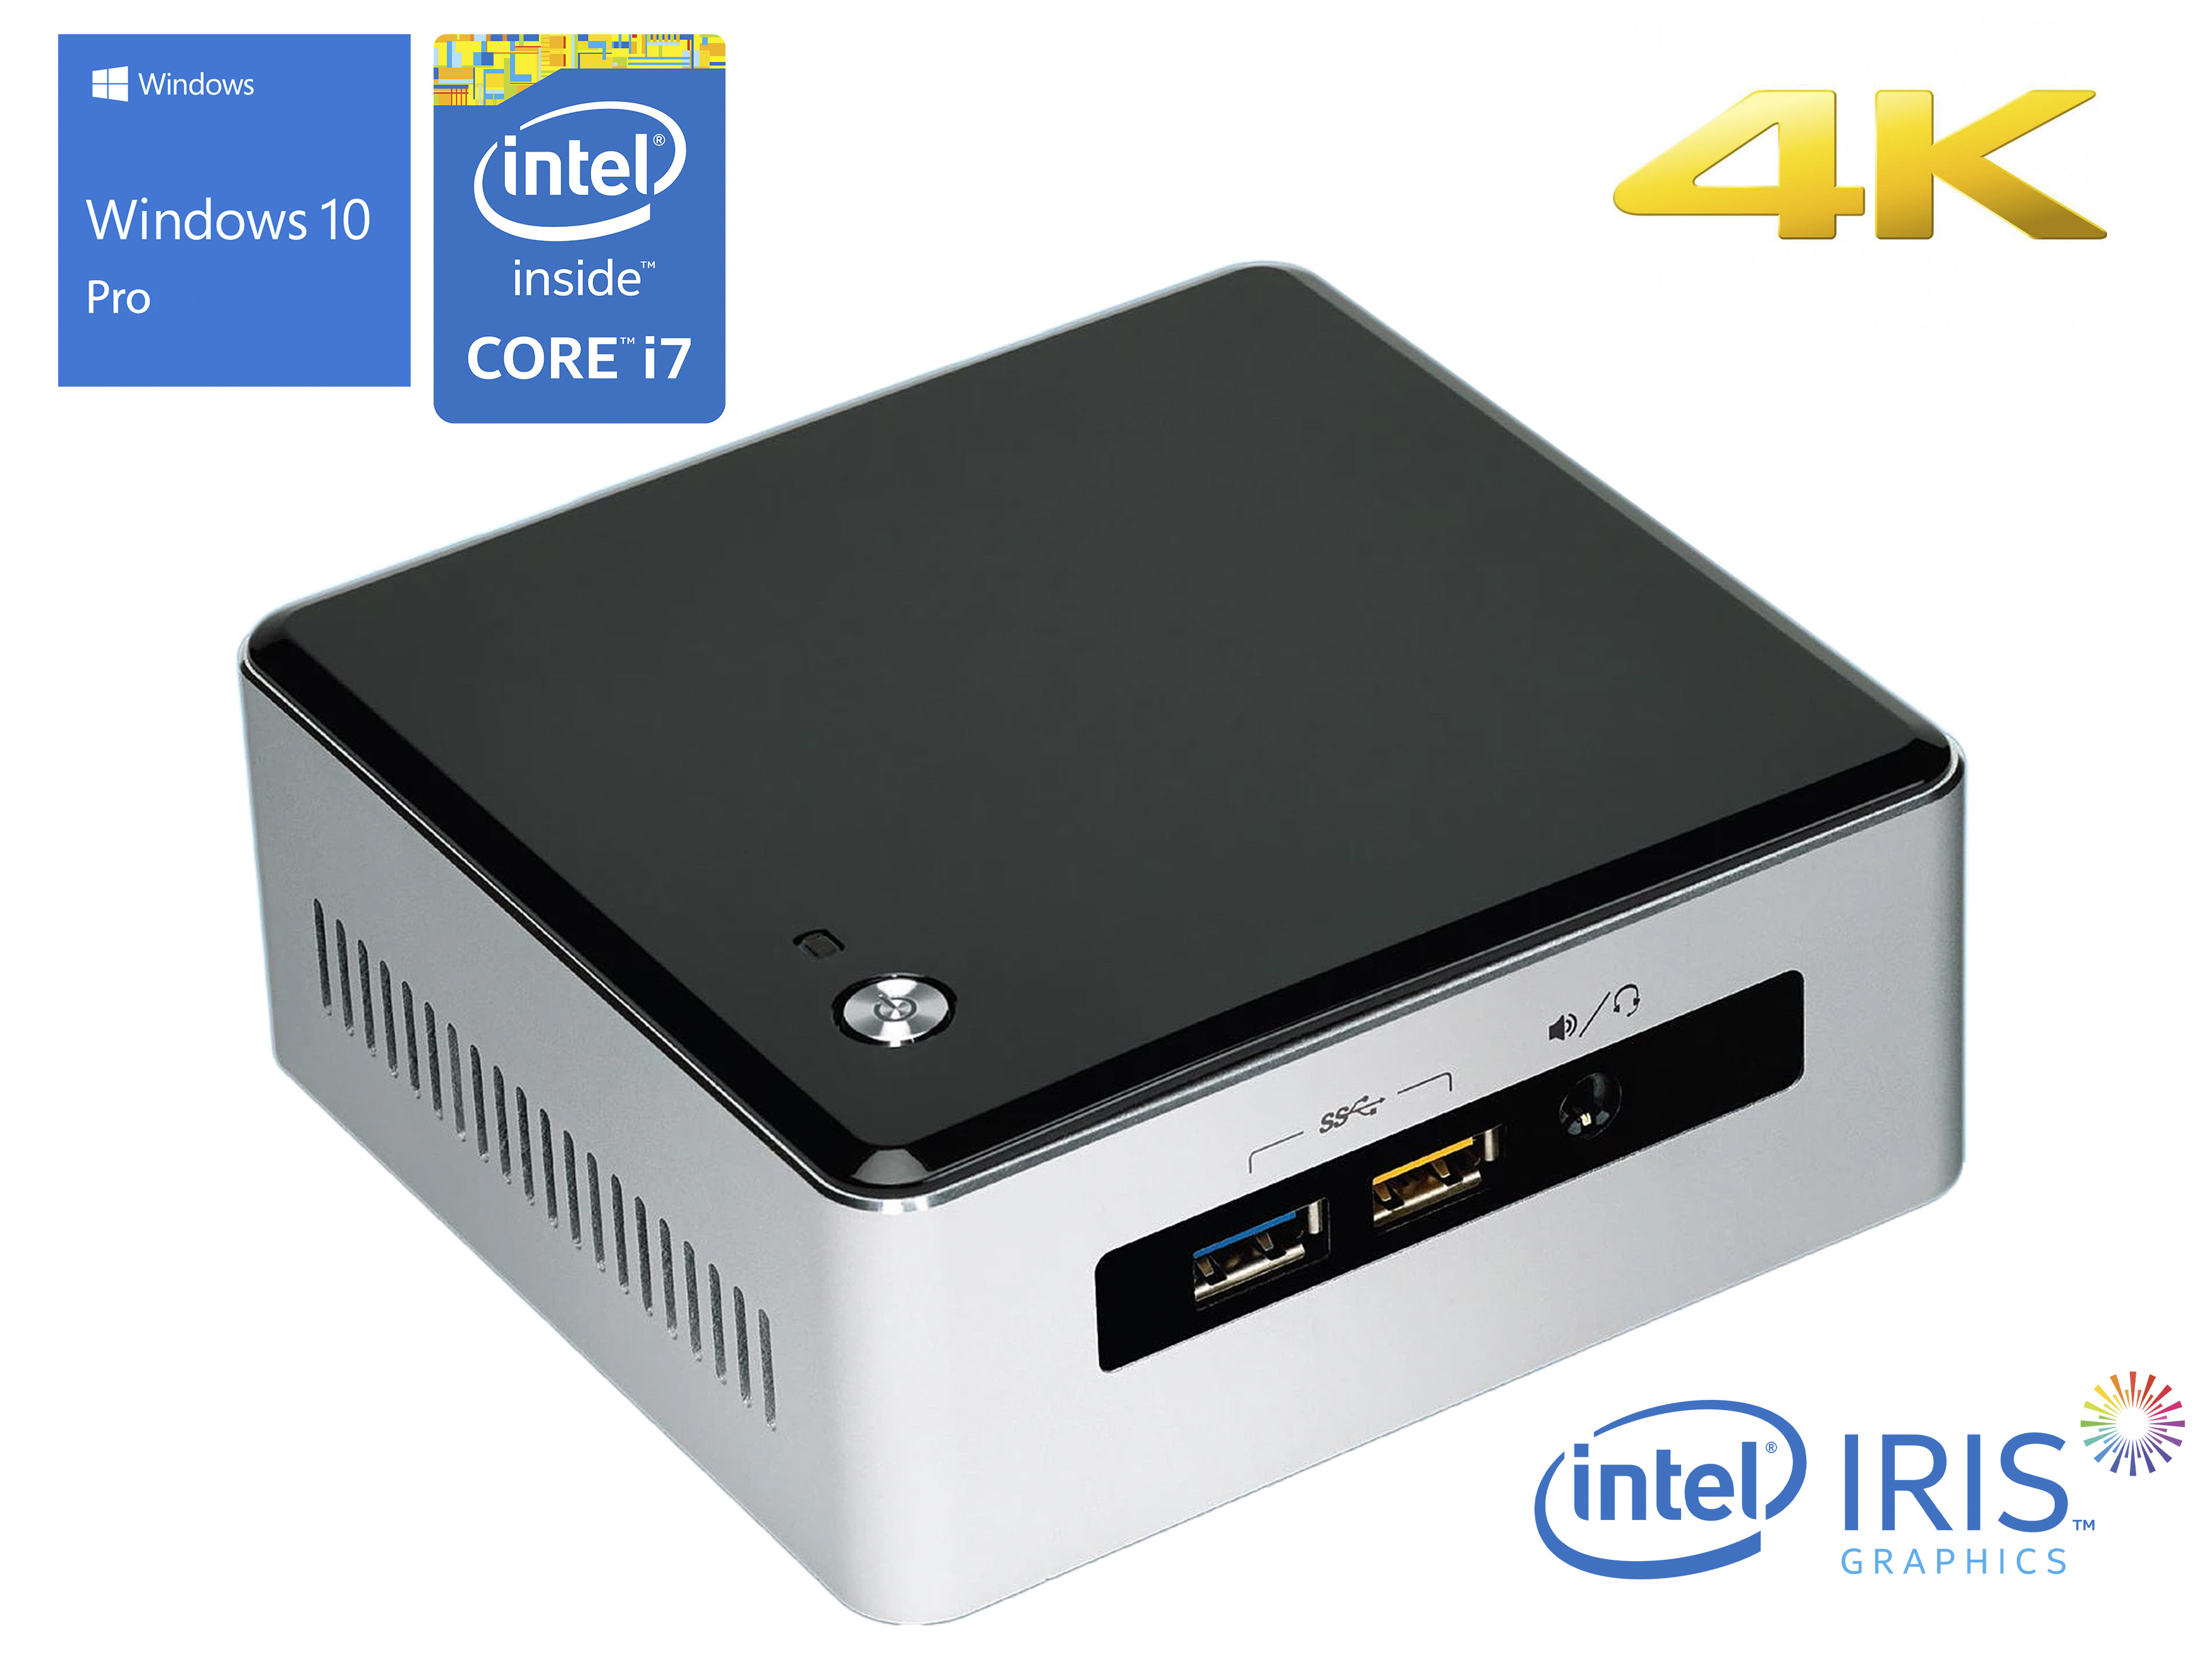 Intel NUC5i7RYH Mini PC, Intel Core i7-5557U Upto 3.40GHz, 16GB RAM, 2TB NVMe SSD + 1TB HDD, Mini HDMI, Mini DisplayPort, Wi-Fi, Bluetooth, Windows 10 Pro - image 2 of 6